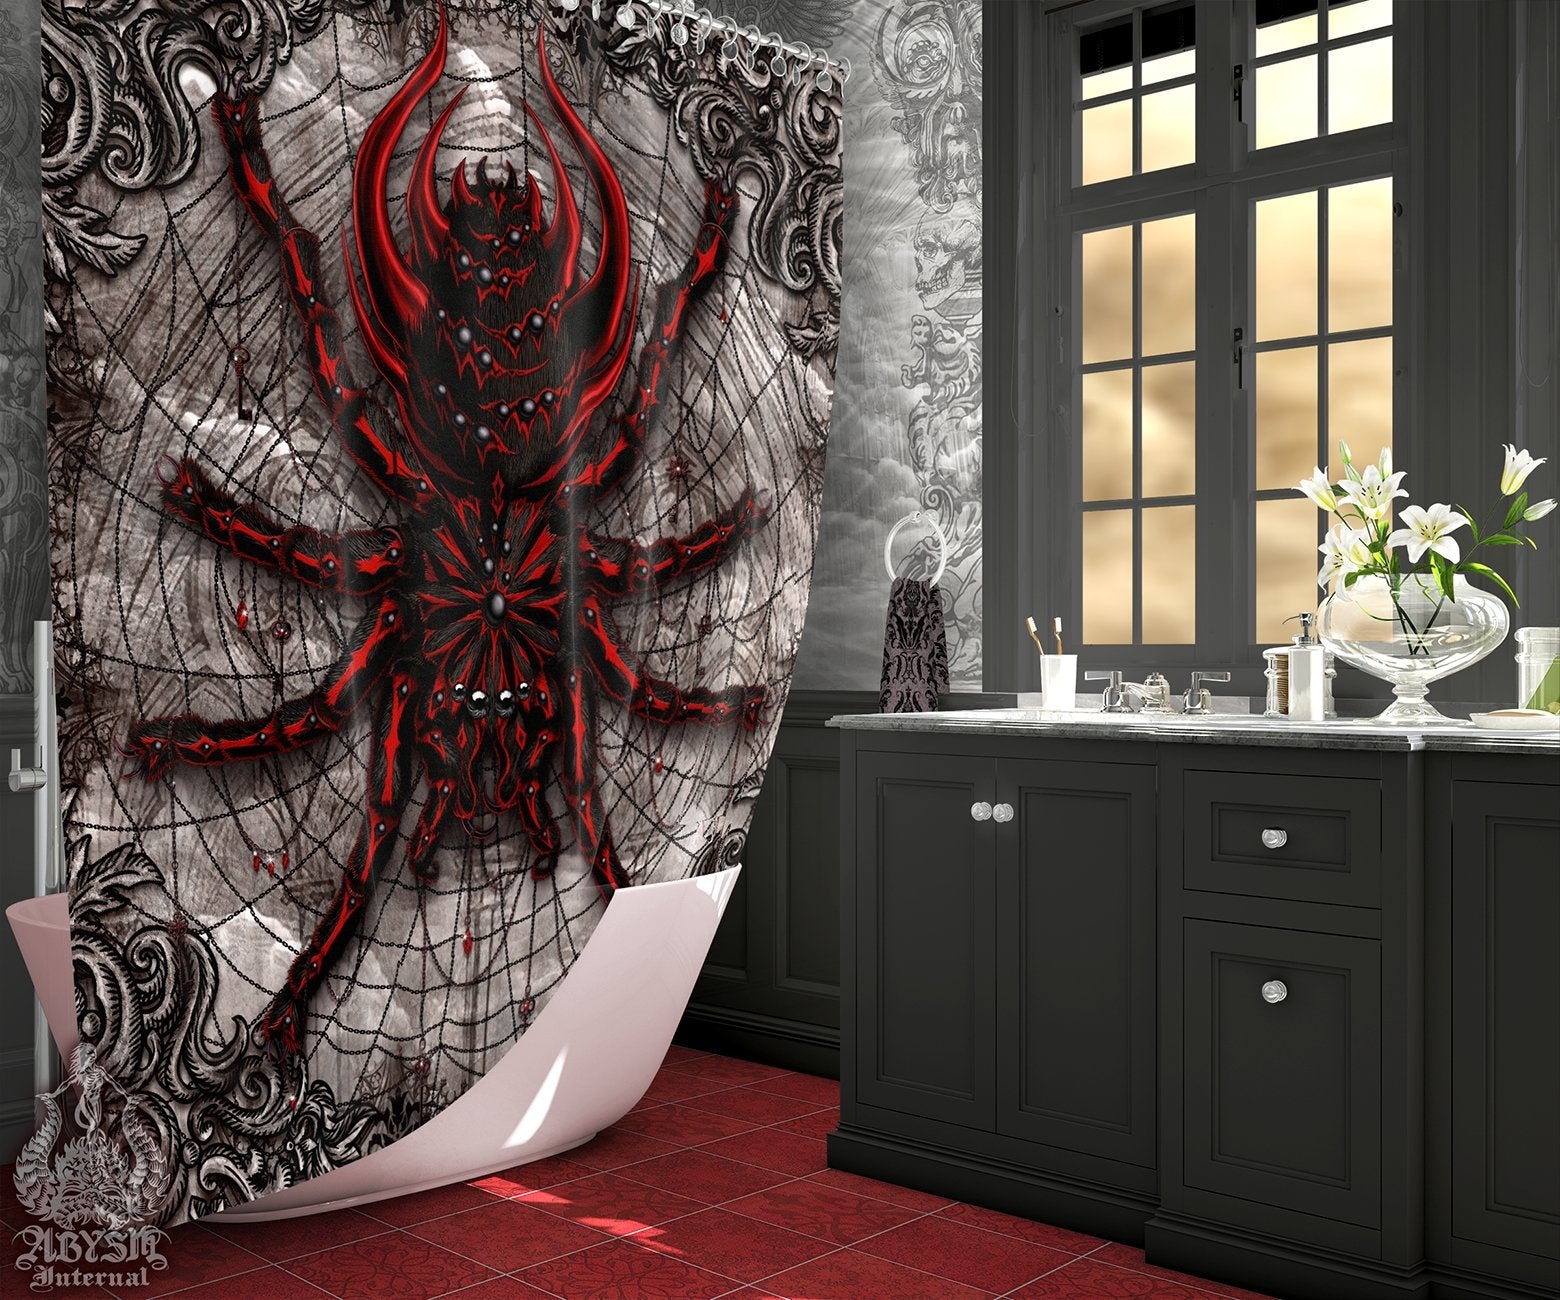 Gothic Shower Curtain, Horror Goth Bathroom Decor, Alternative Home - Spider, Grey, Tarantula Art - Abysm Internal